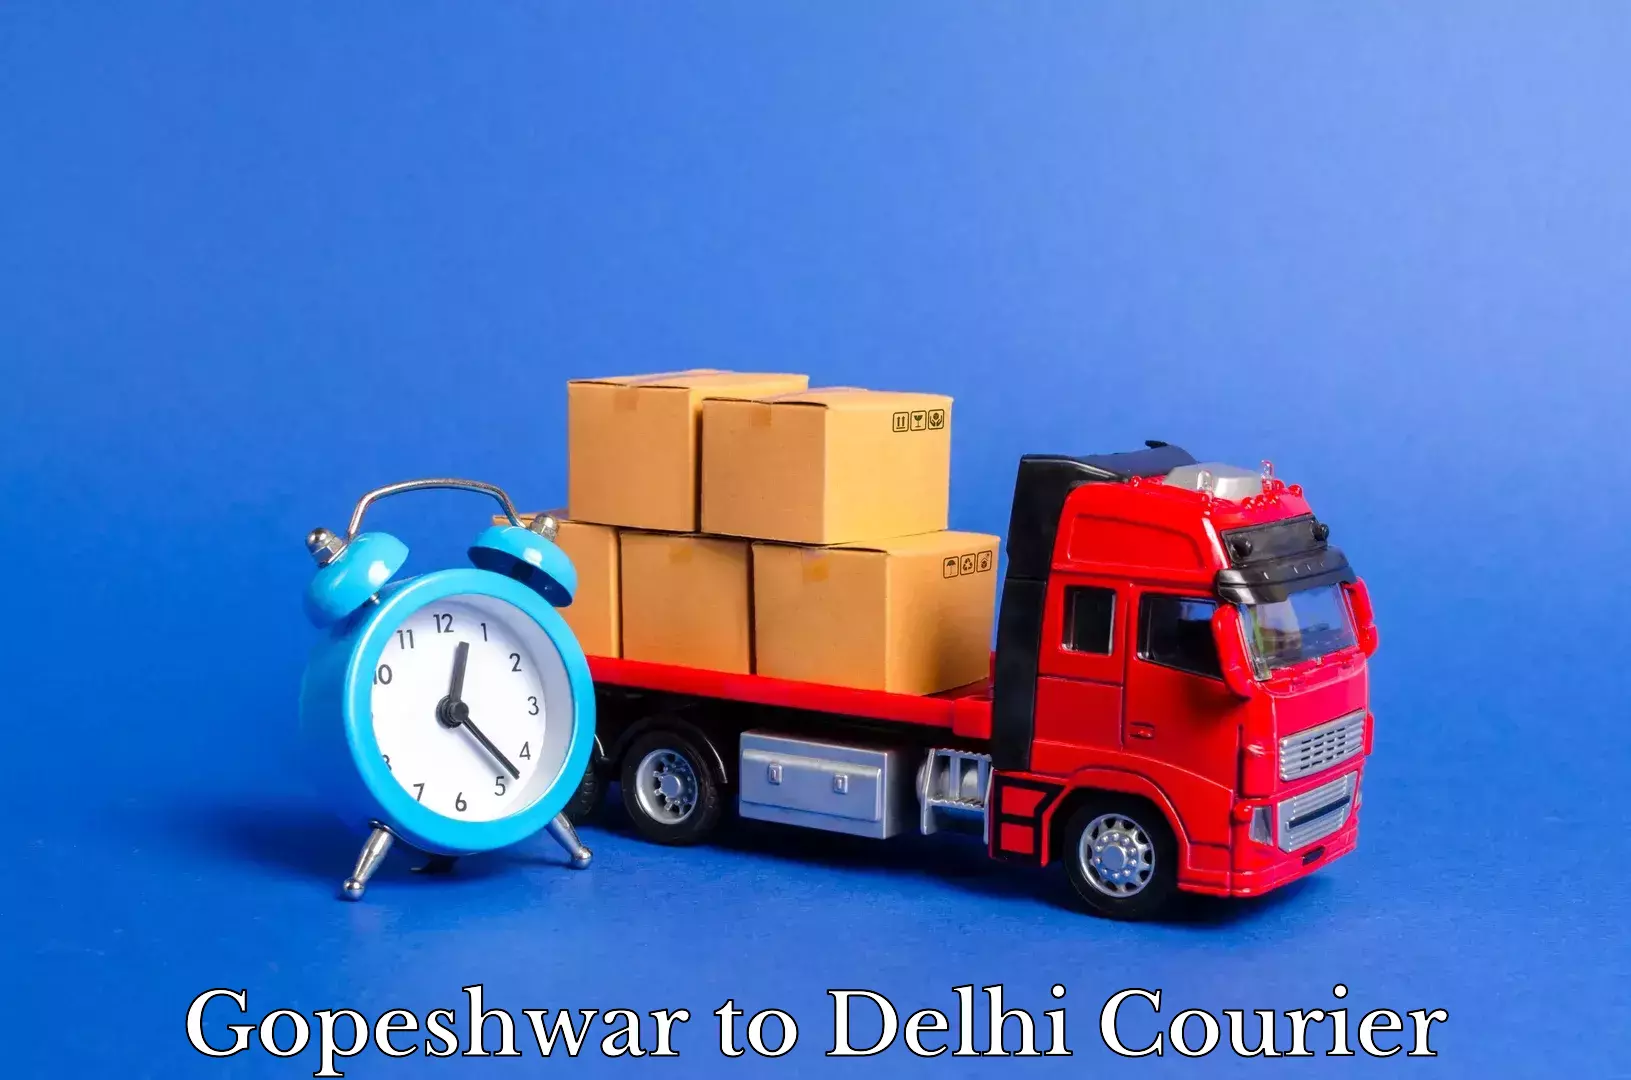 Household moving experts Gopeshwar to Delhi